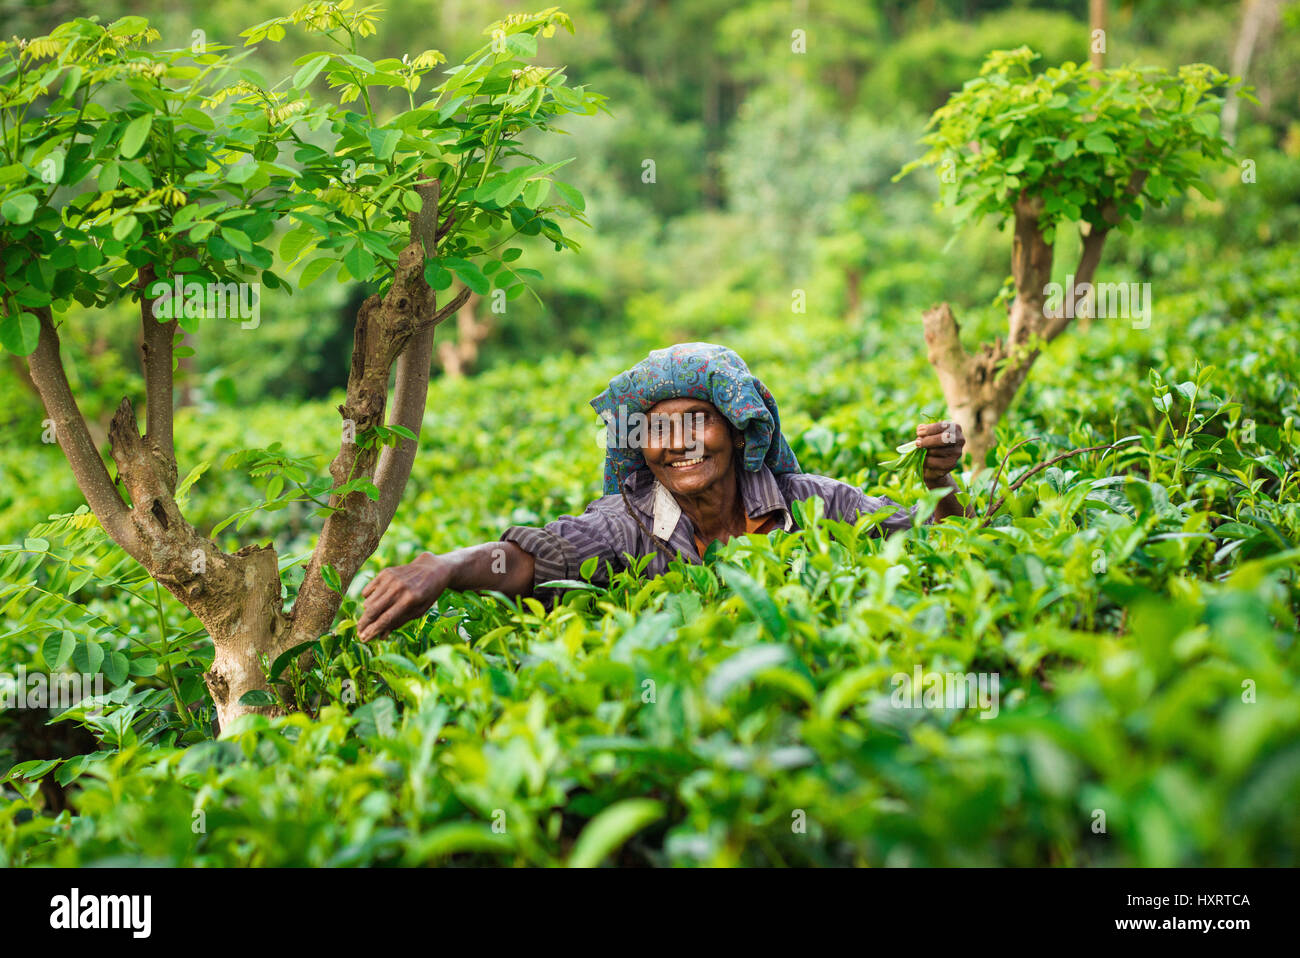 Coltivatori di tè in Sri Lanka. Questi signori lavorano tutto il giorno nelle aziende agricole di tè di Sri Lanka. Spesso si inizierà a lavorare come adolescenti a lavorare fino alla vecchiaia. Foto Stock